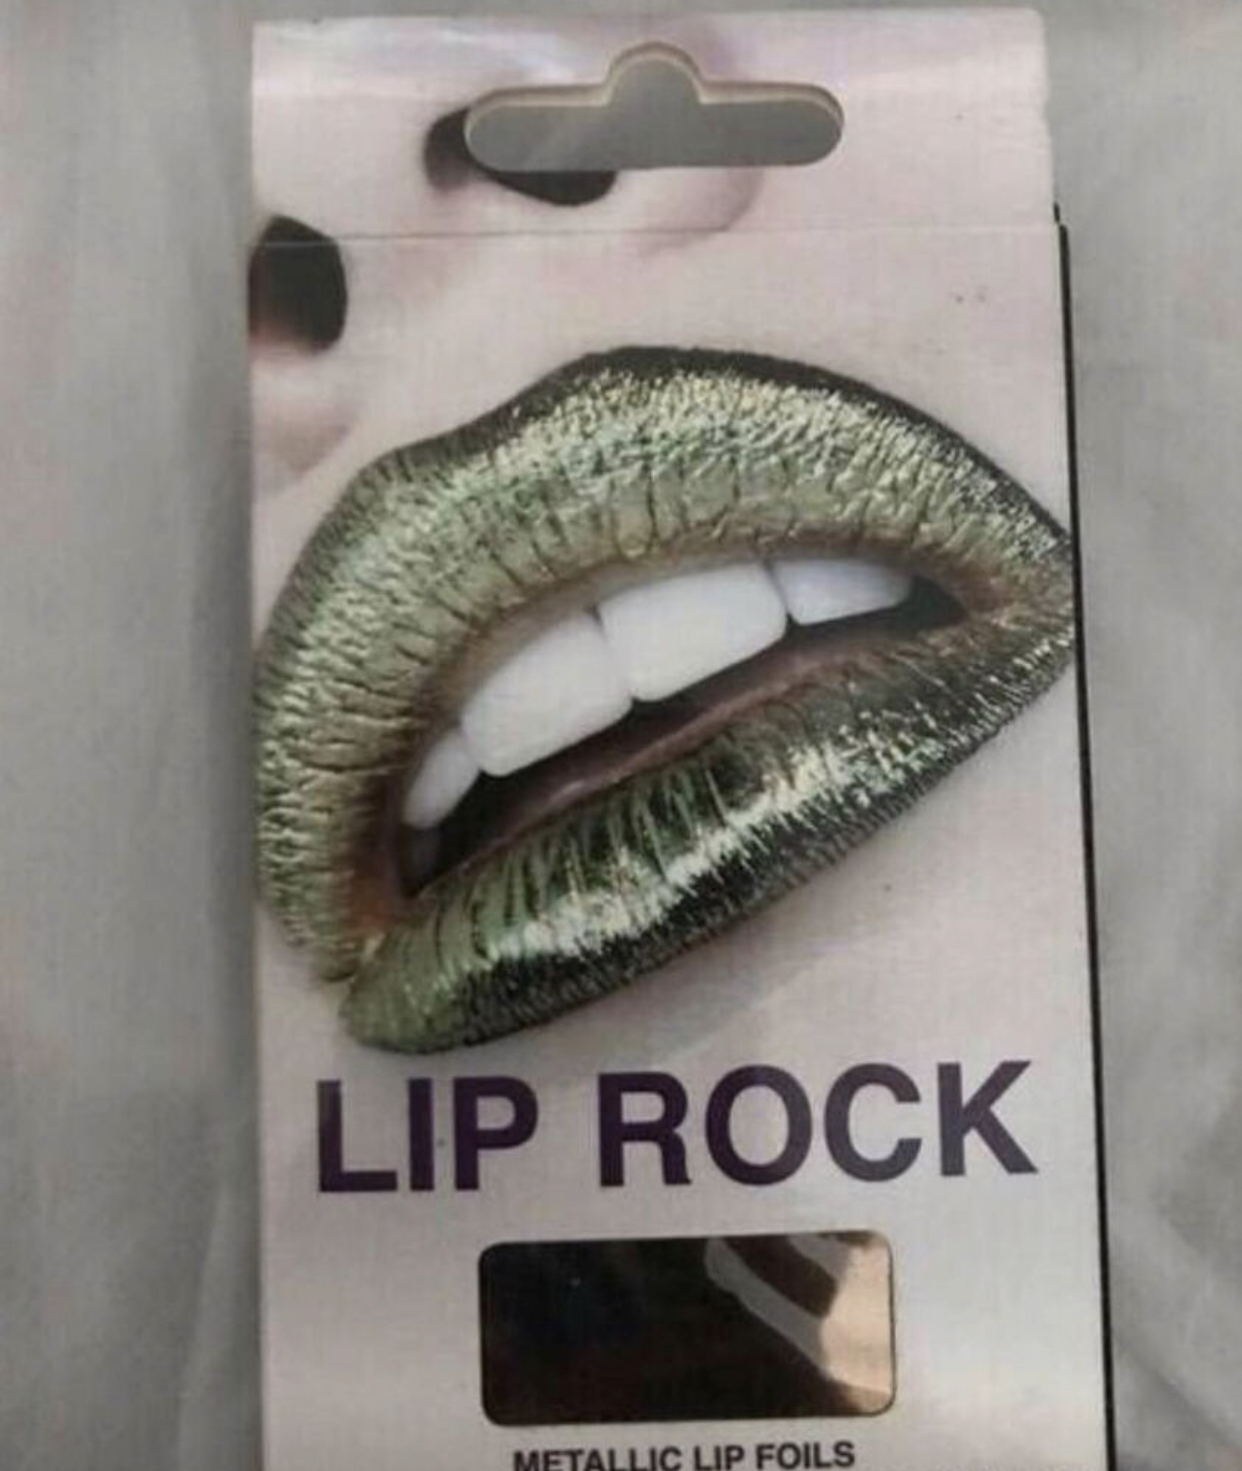 Lip rock